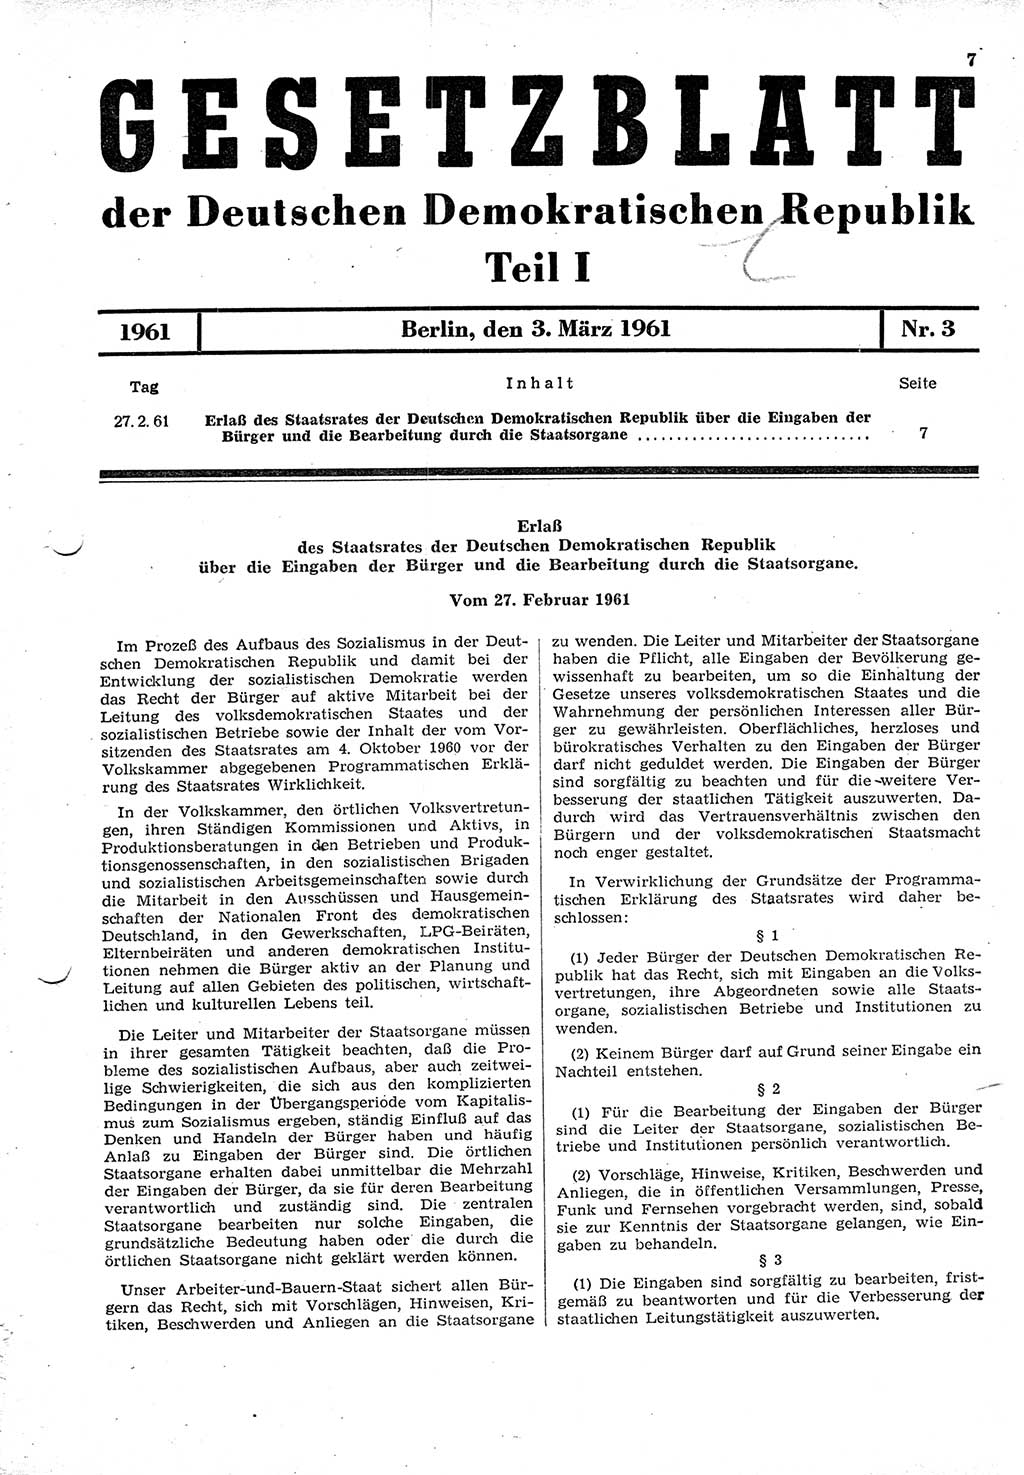 Gesetzblatt (GBl.) der Deutschen Demokratischen Republik (DDR) Teil Ⅰ 1961, Seite 7 (GBl. DDR Ⅰ 1961, S. 7)